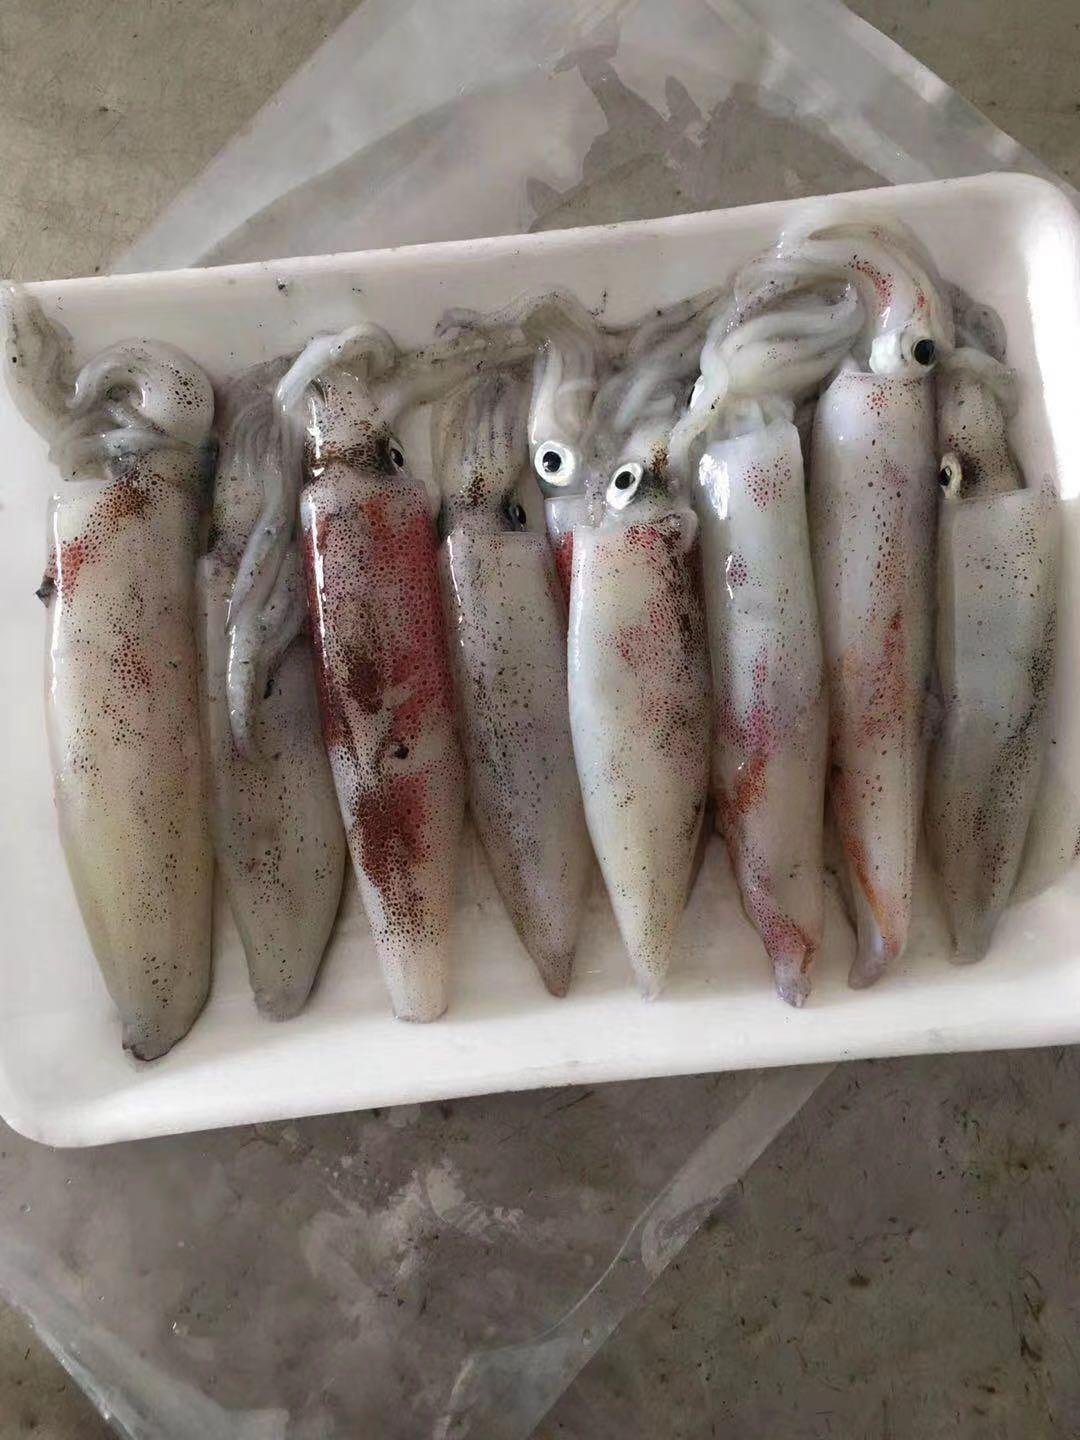 北部灣北海鮮魷魚海鮮水產生鮮魷魚